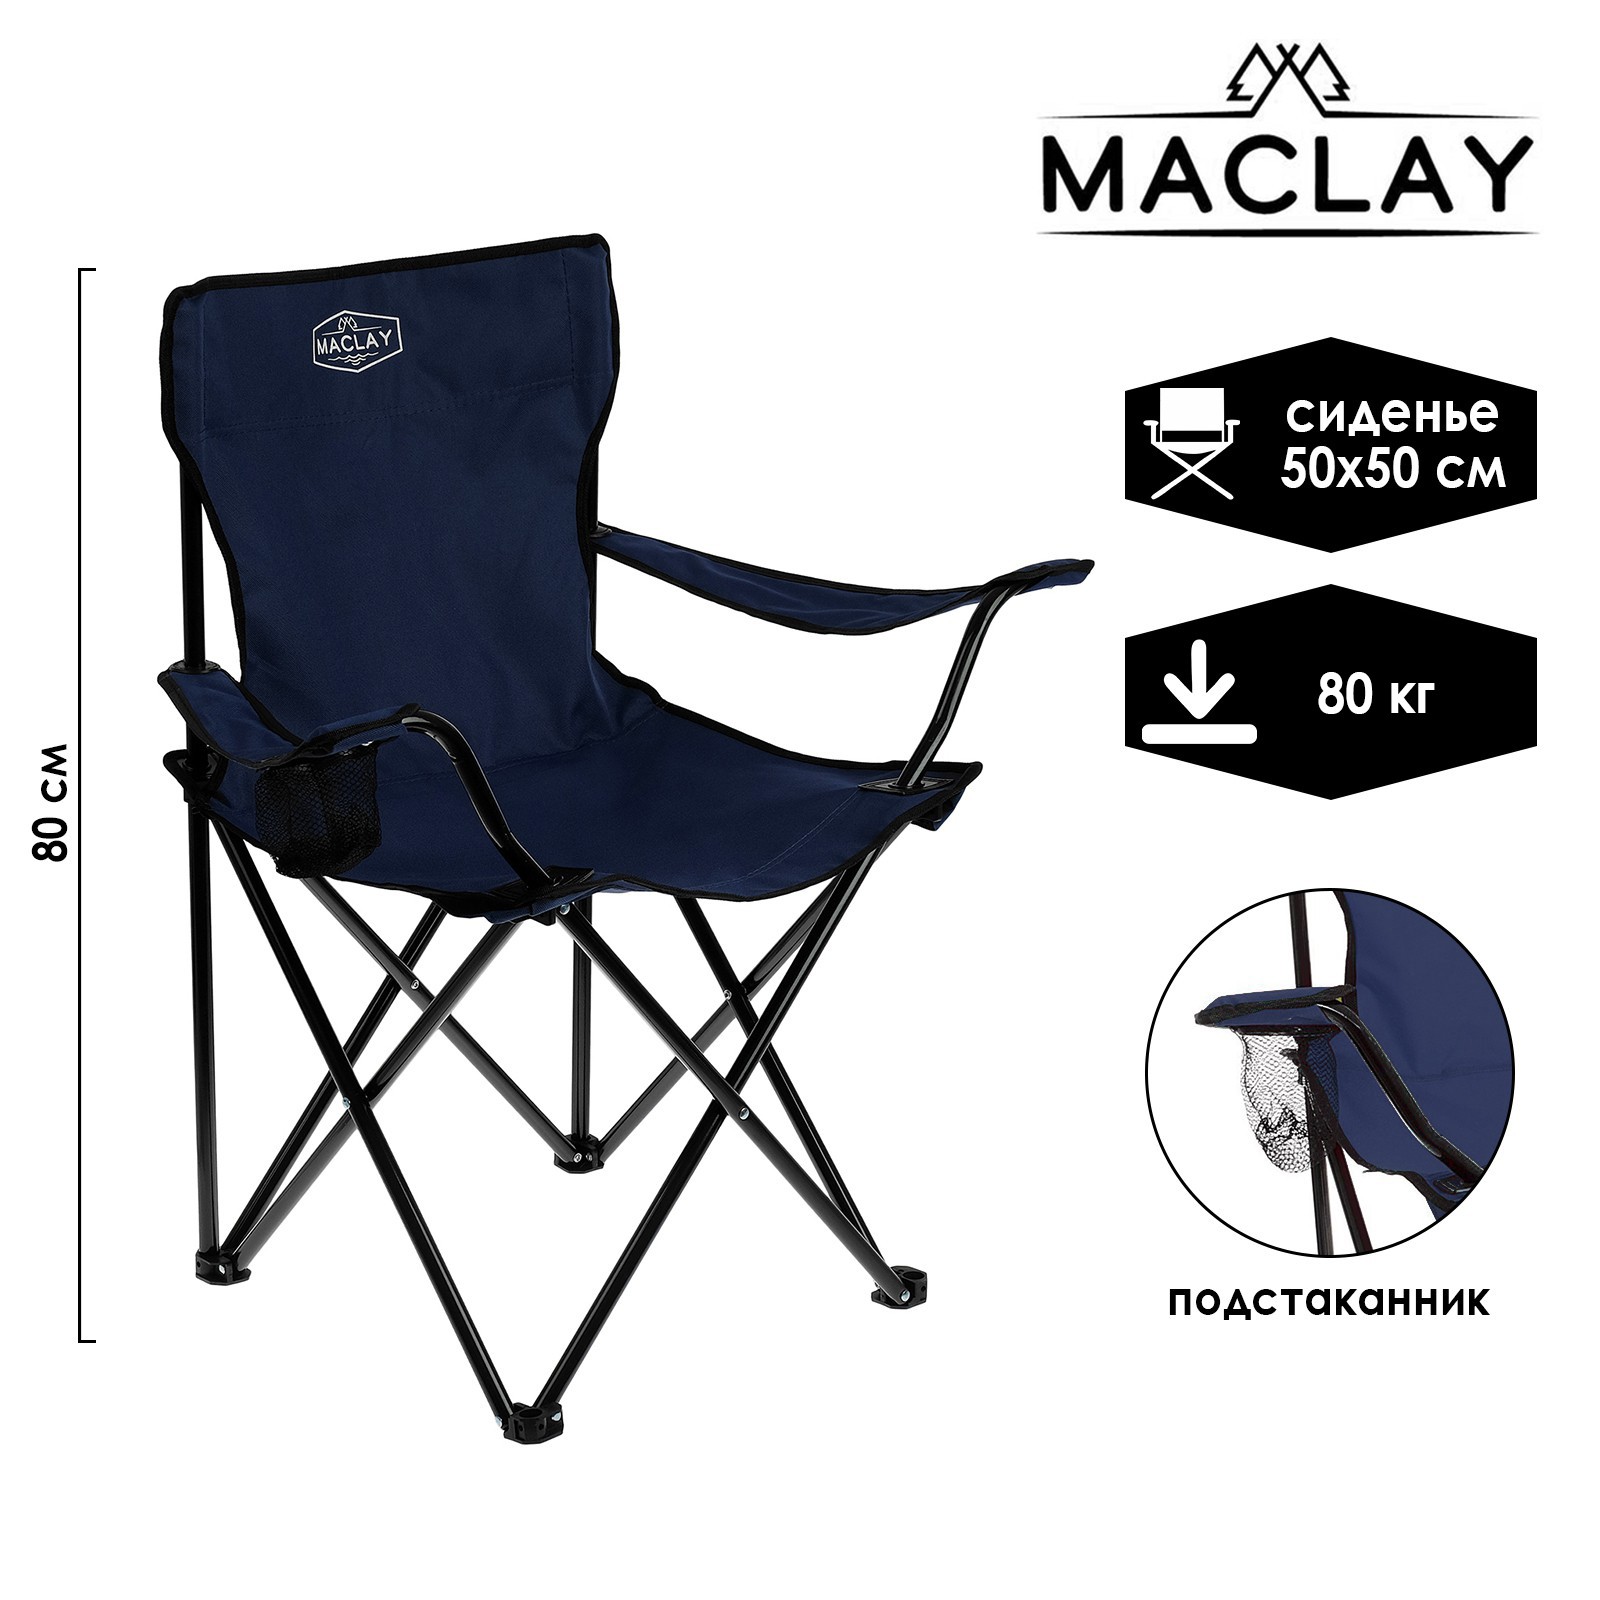 Кресло Maclay туристическое с подстаканником р. 50 х 50 х 80 см до 80 кг цвет синий - фото 1